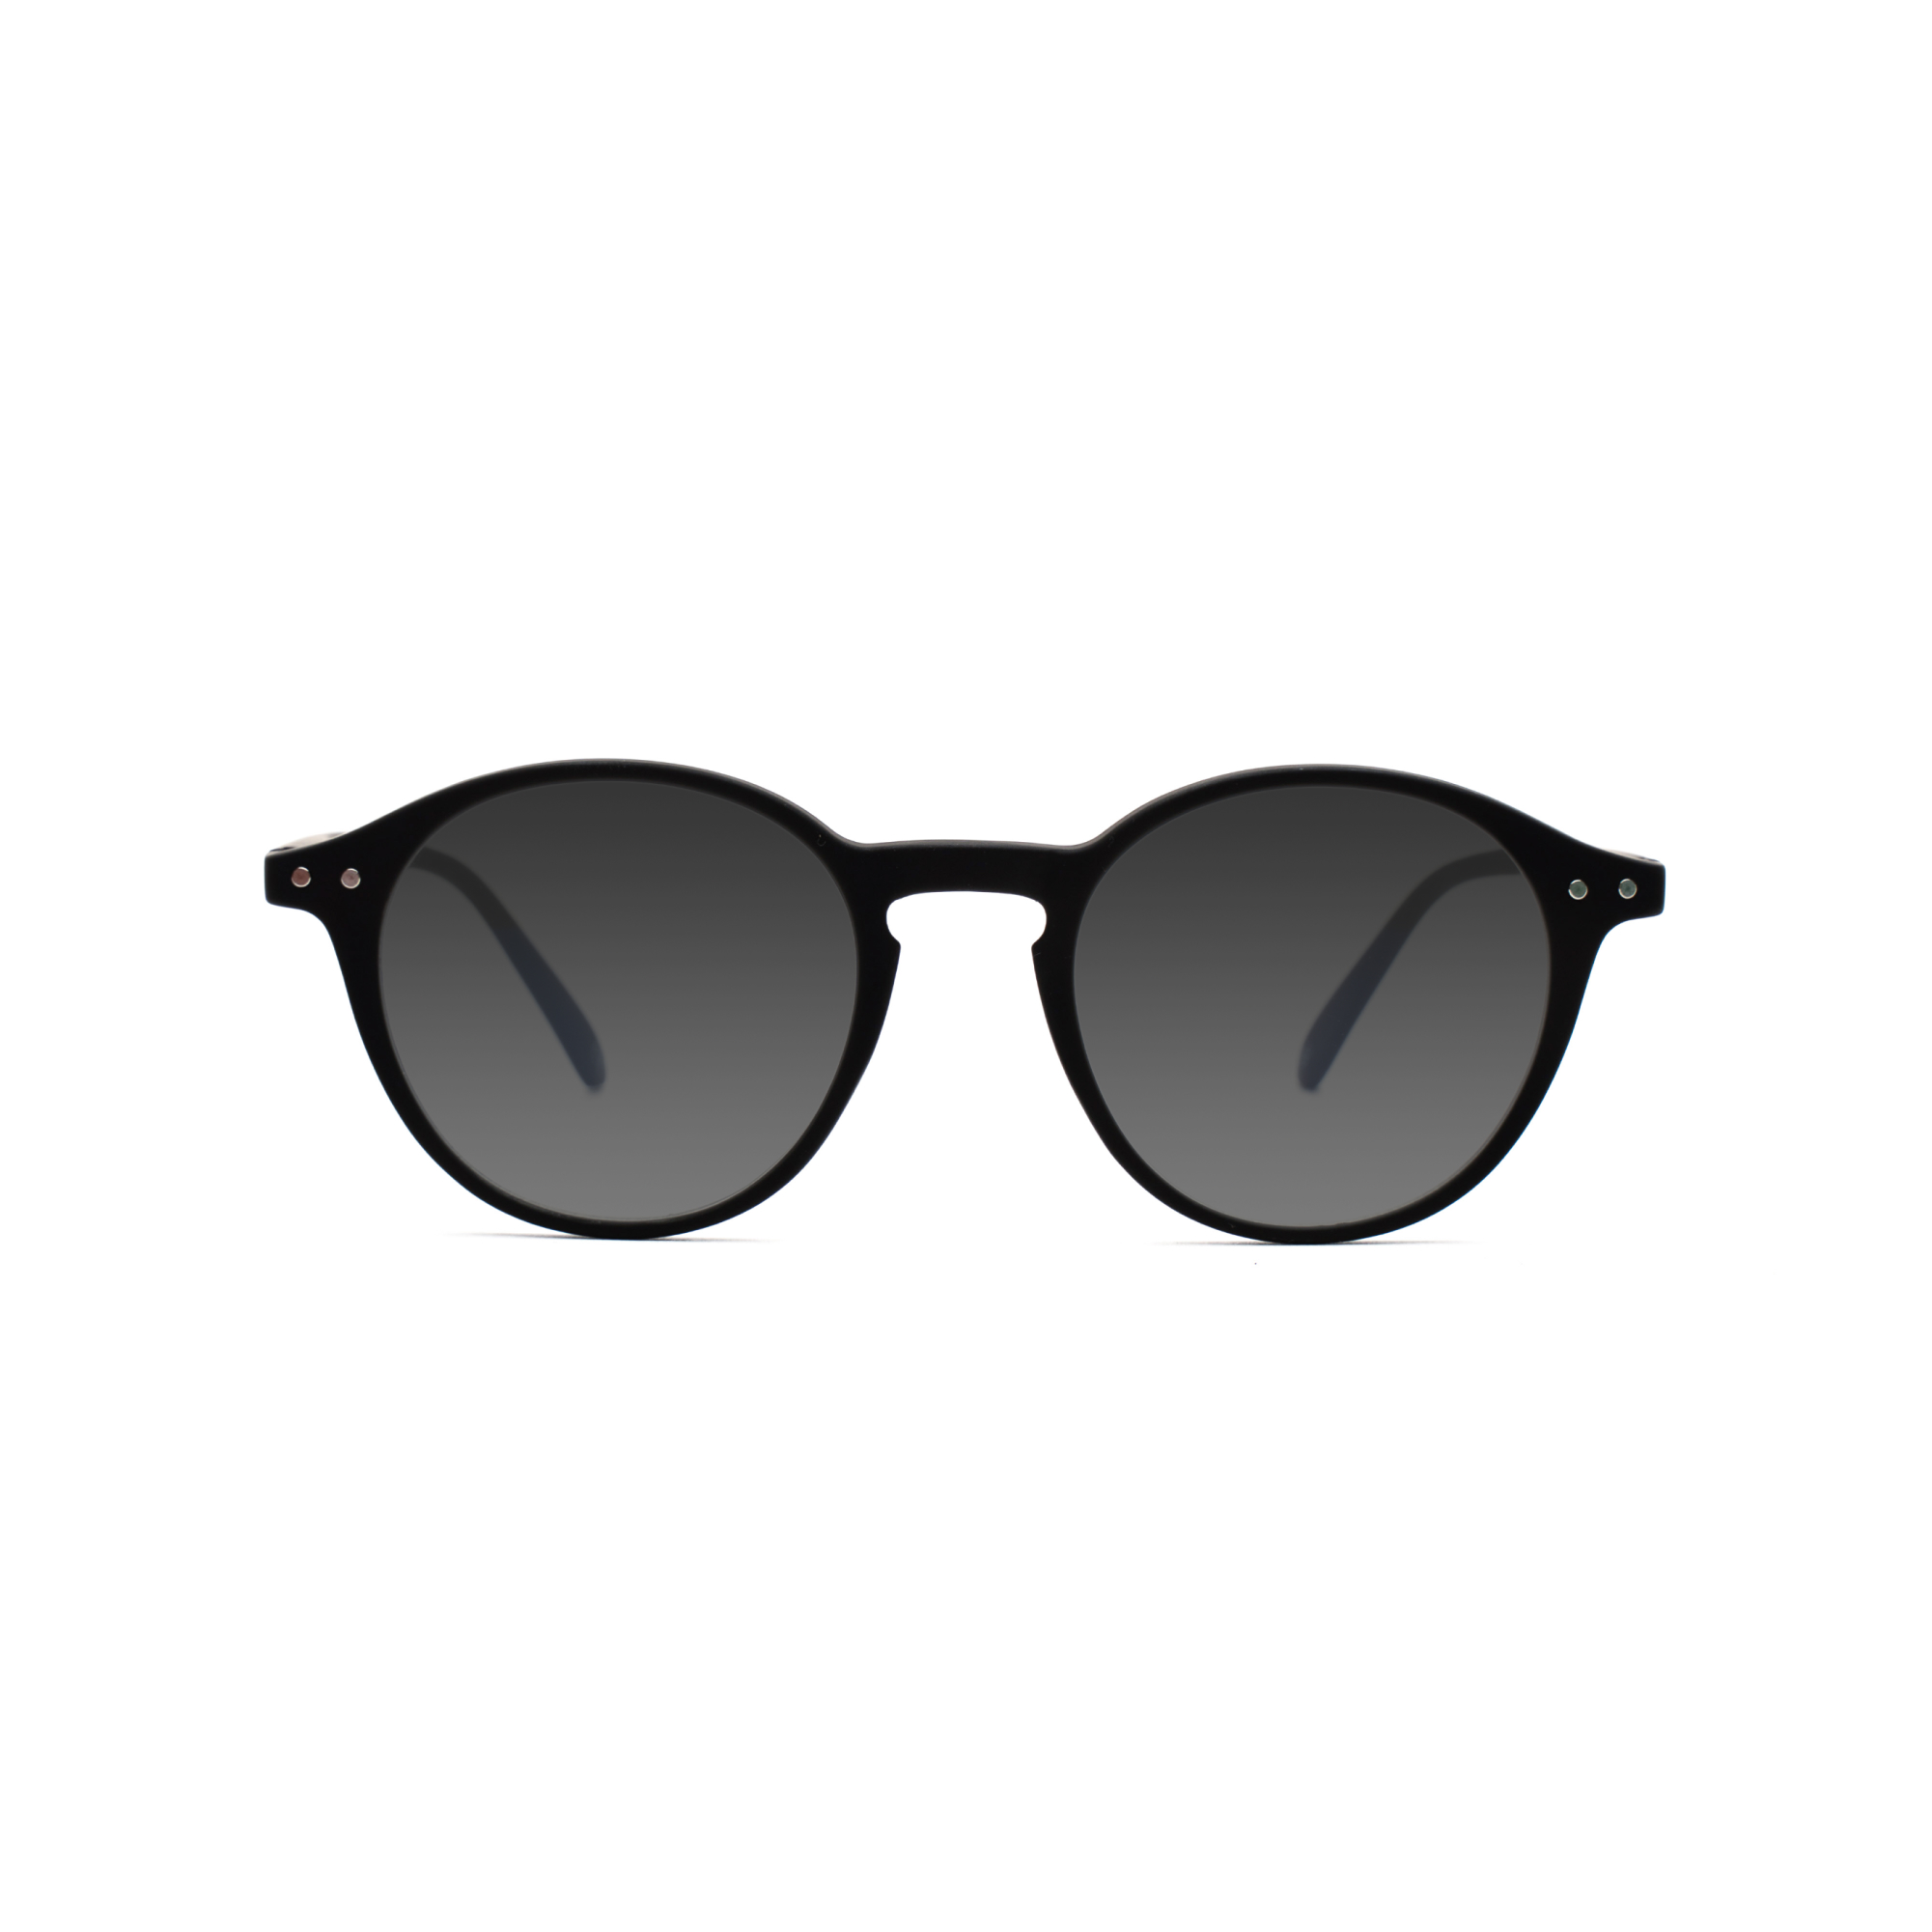 Women's transition glasses – Luca GEN 8 w - Black